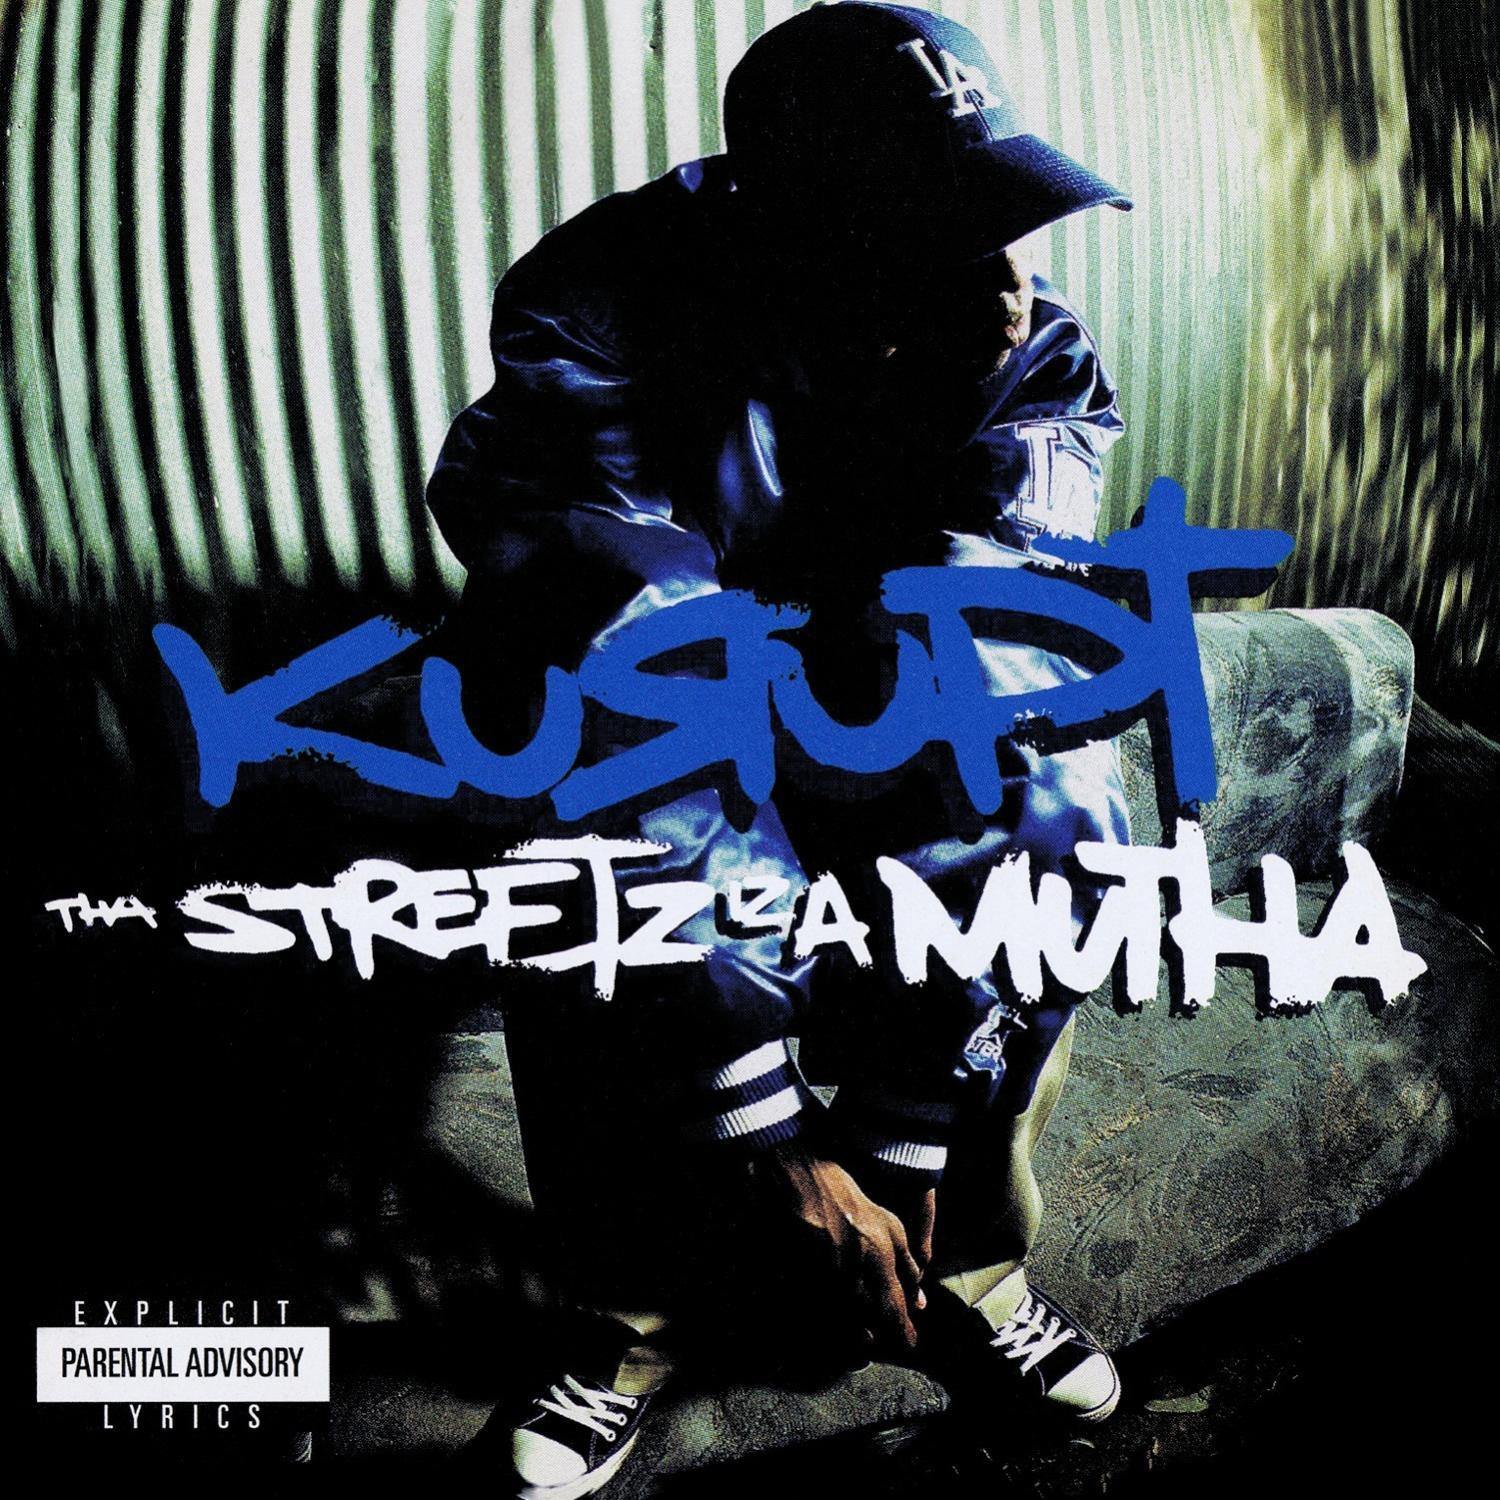 Tha Streetz Iz A Mutha (Digitally Remastered)